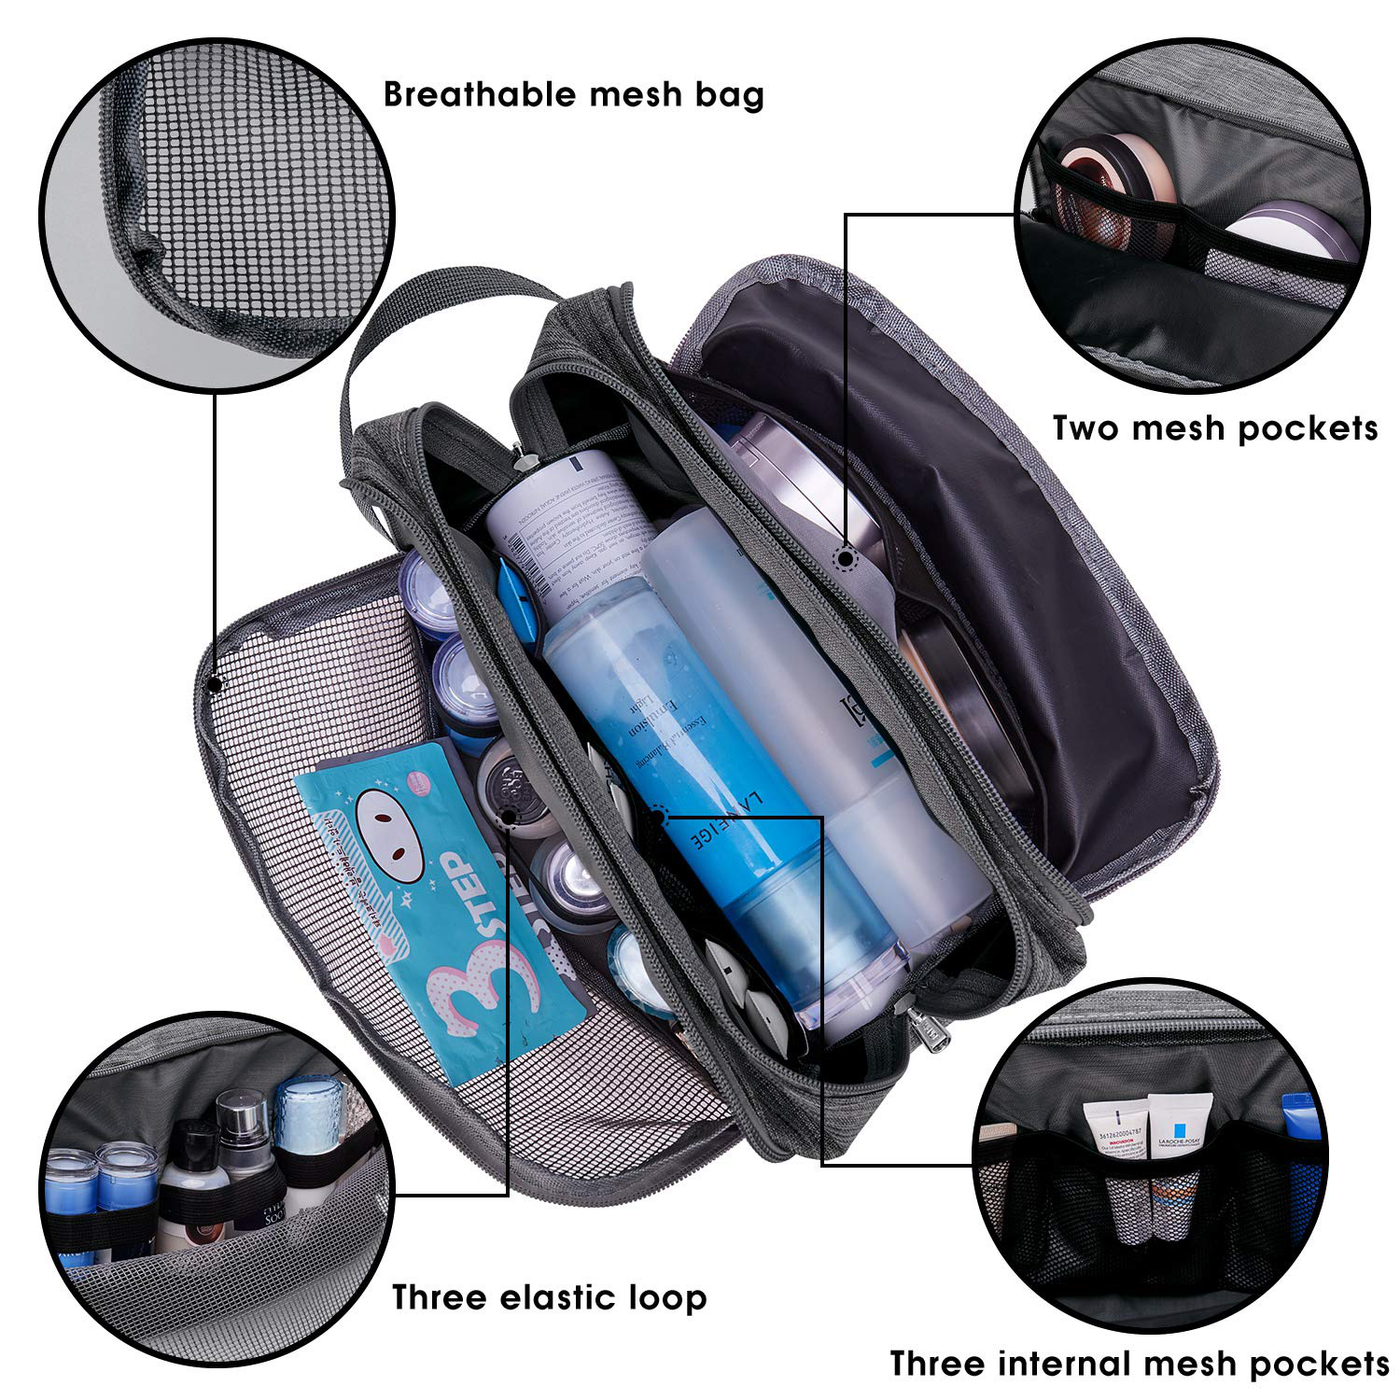 Toiletry Bag Small Nylon Dopp Kit Lightweight Shaving Bag for Men and Women (Denim Grey)